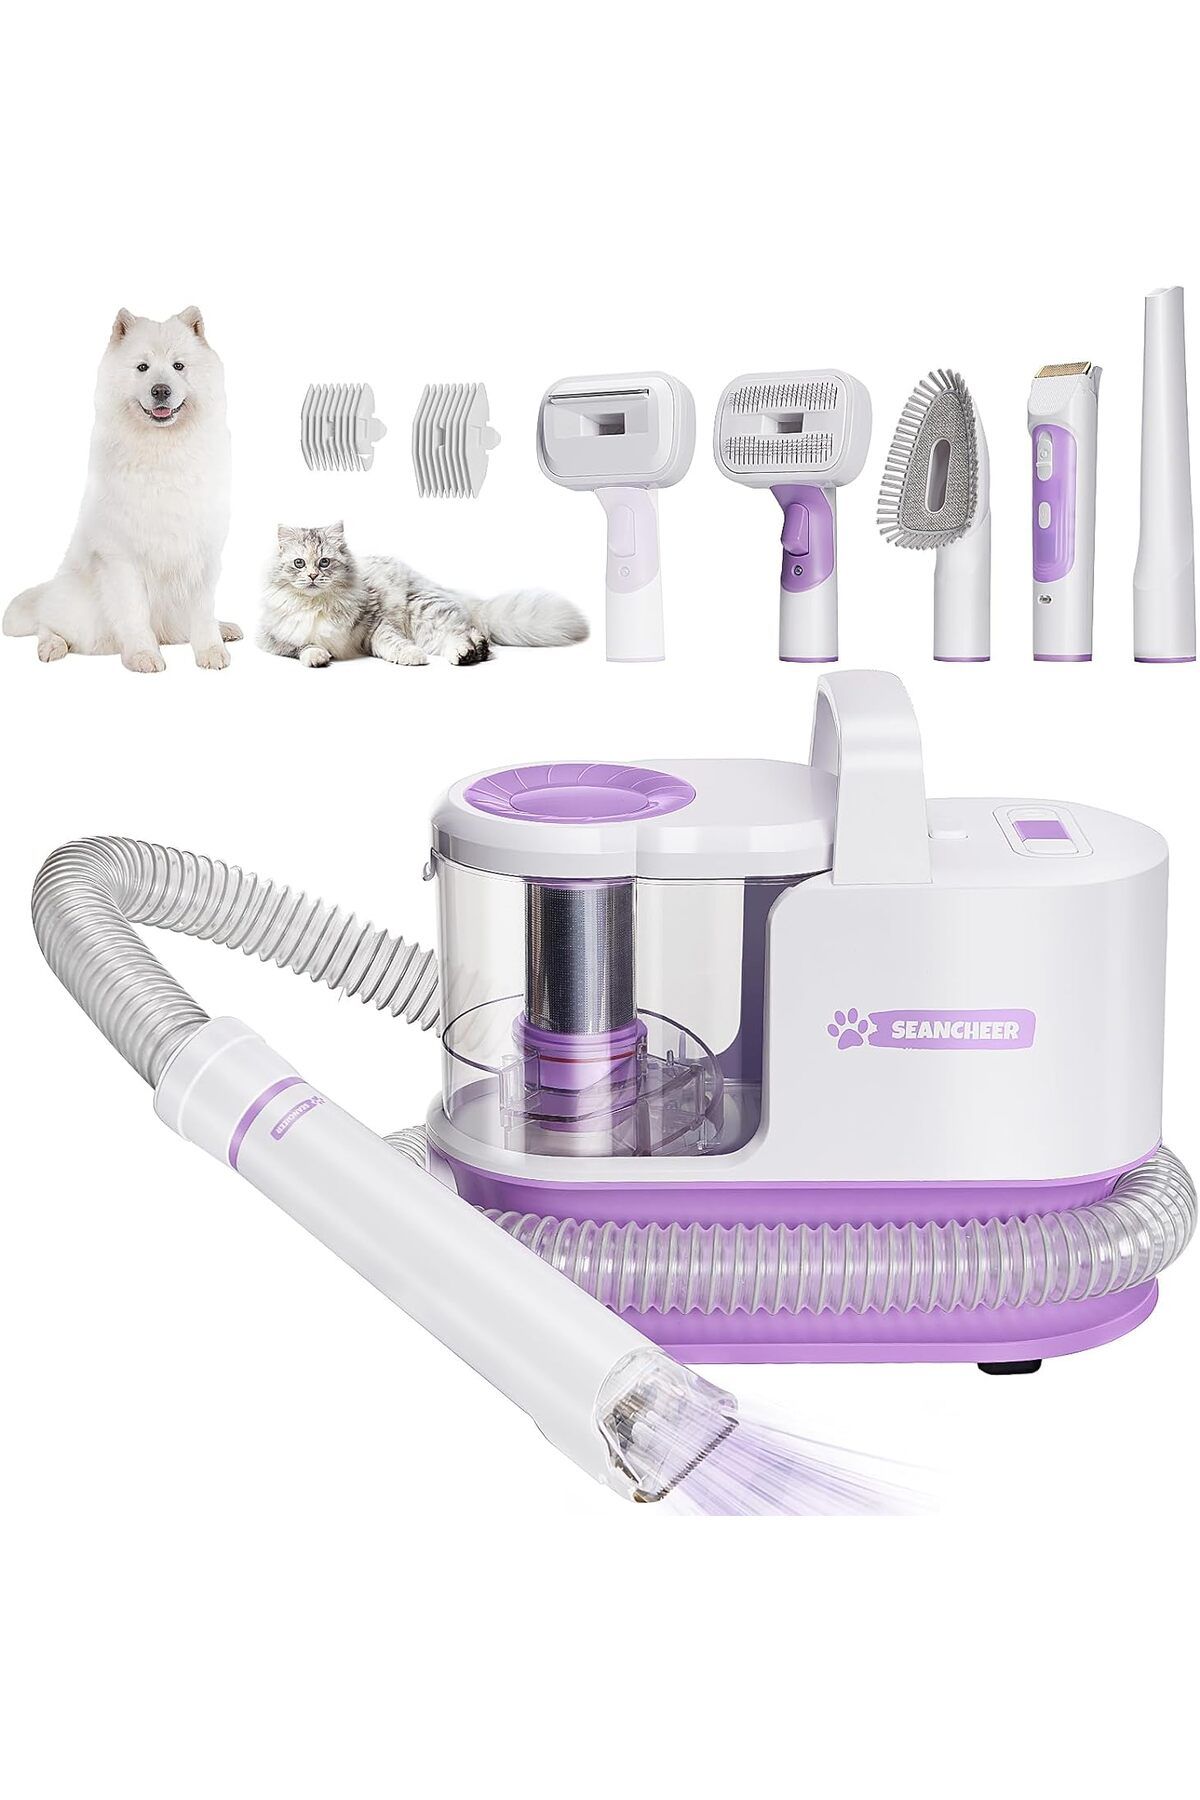 SEANCHEER Elektrikli süpürge ile köpek tıraş makinesi, 5 bakım aletiyle düzeltici, emici ve az gürültülü, lila